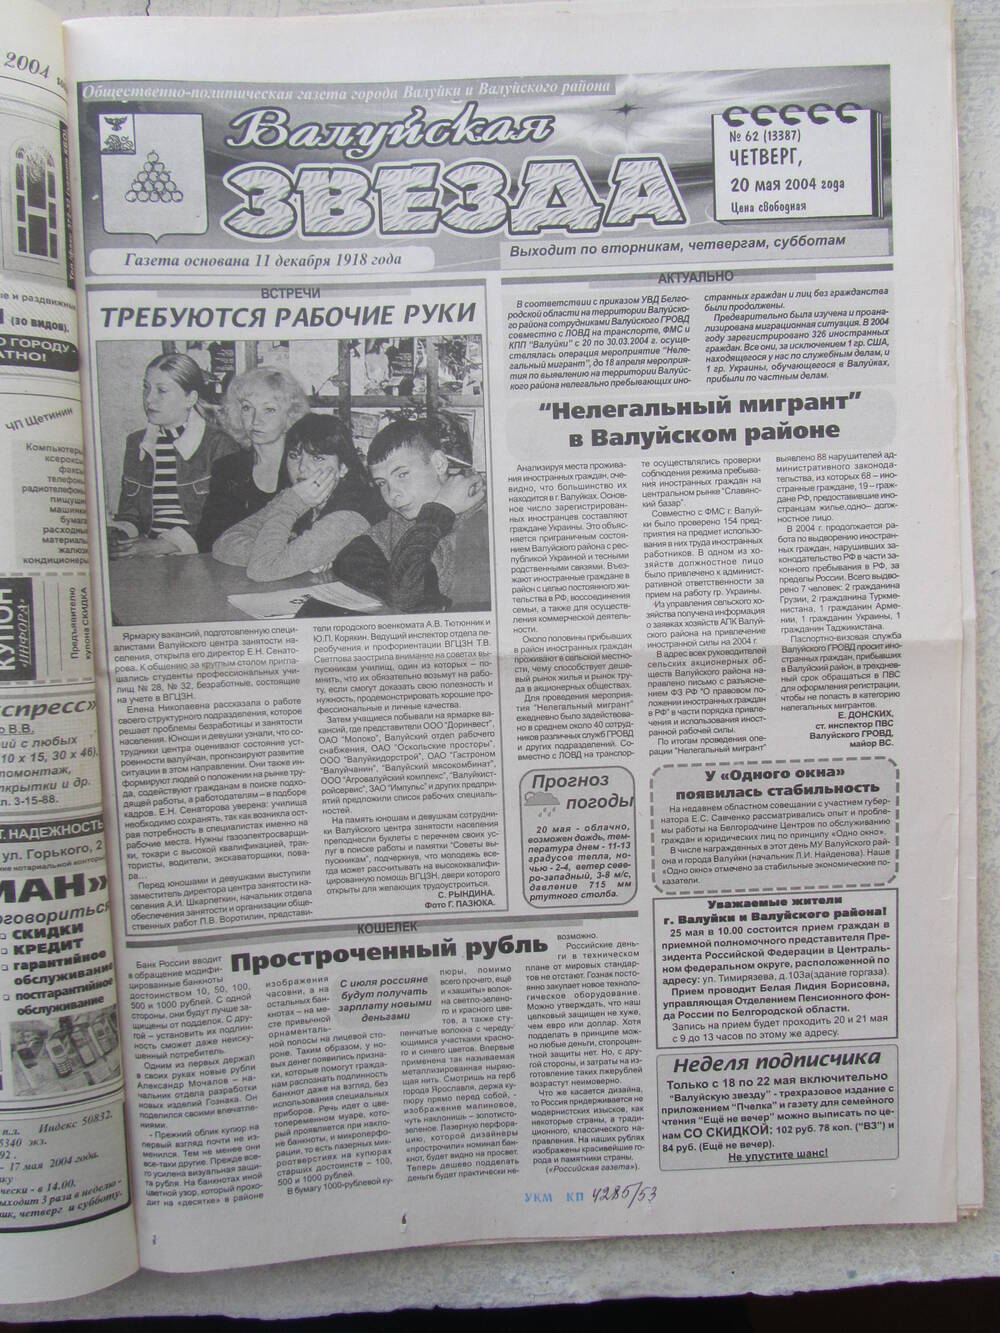 Газета Валуйская звезда №62 от 20.05.2004 г